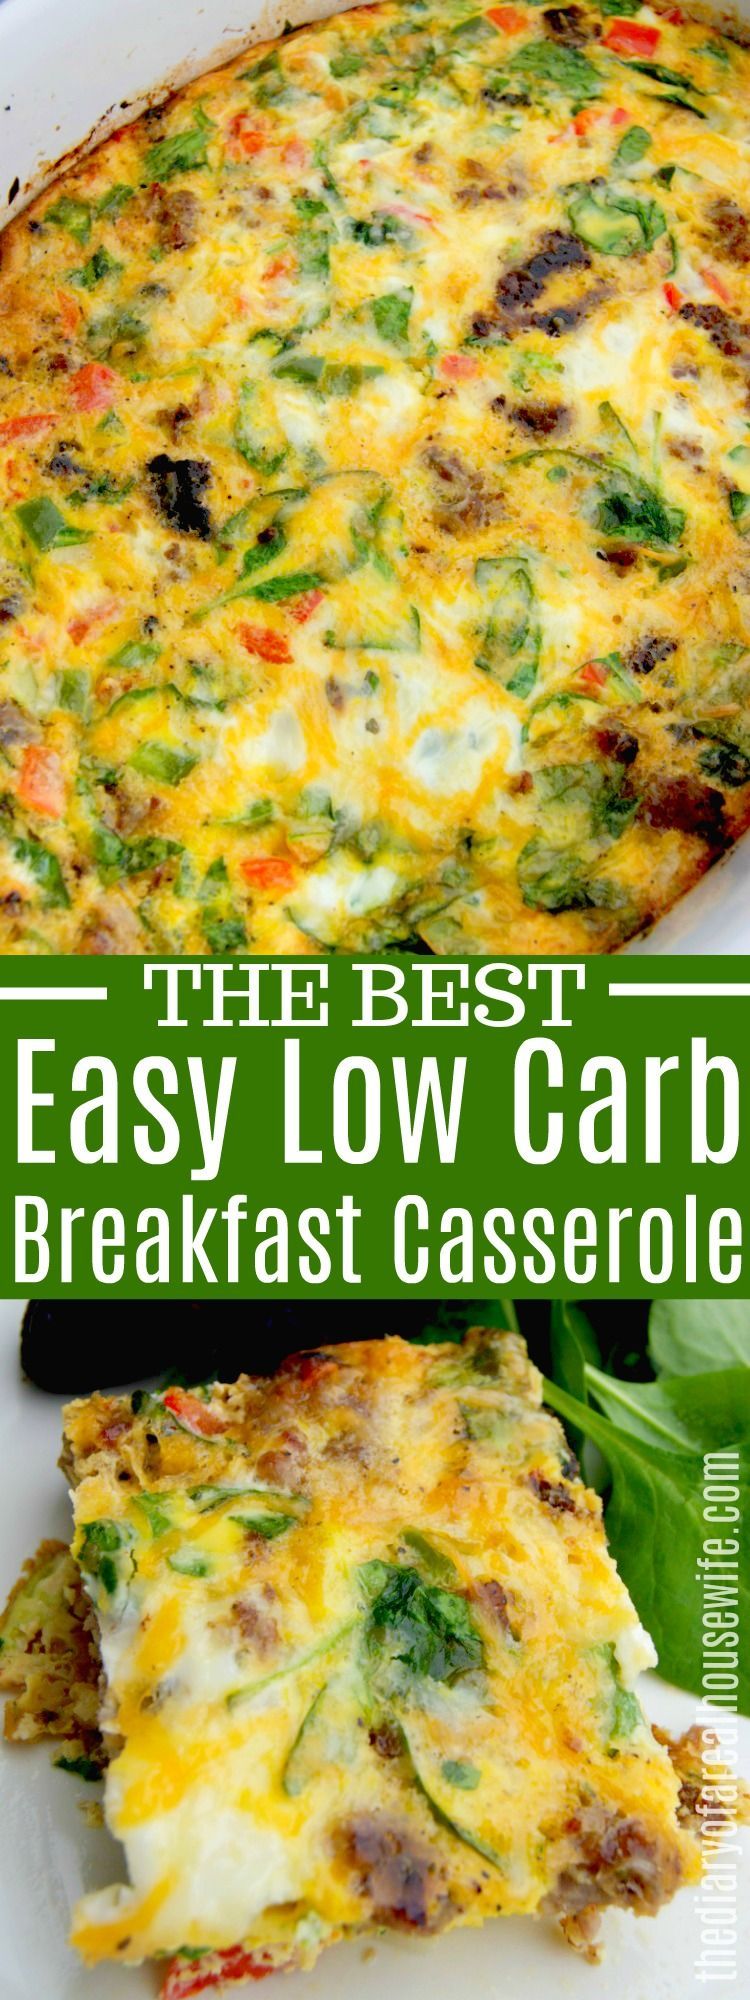 15 healthy recipes Breakfast casserole ideas